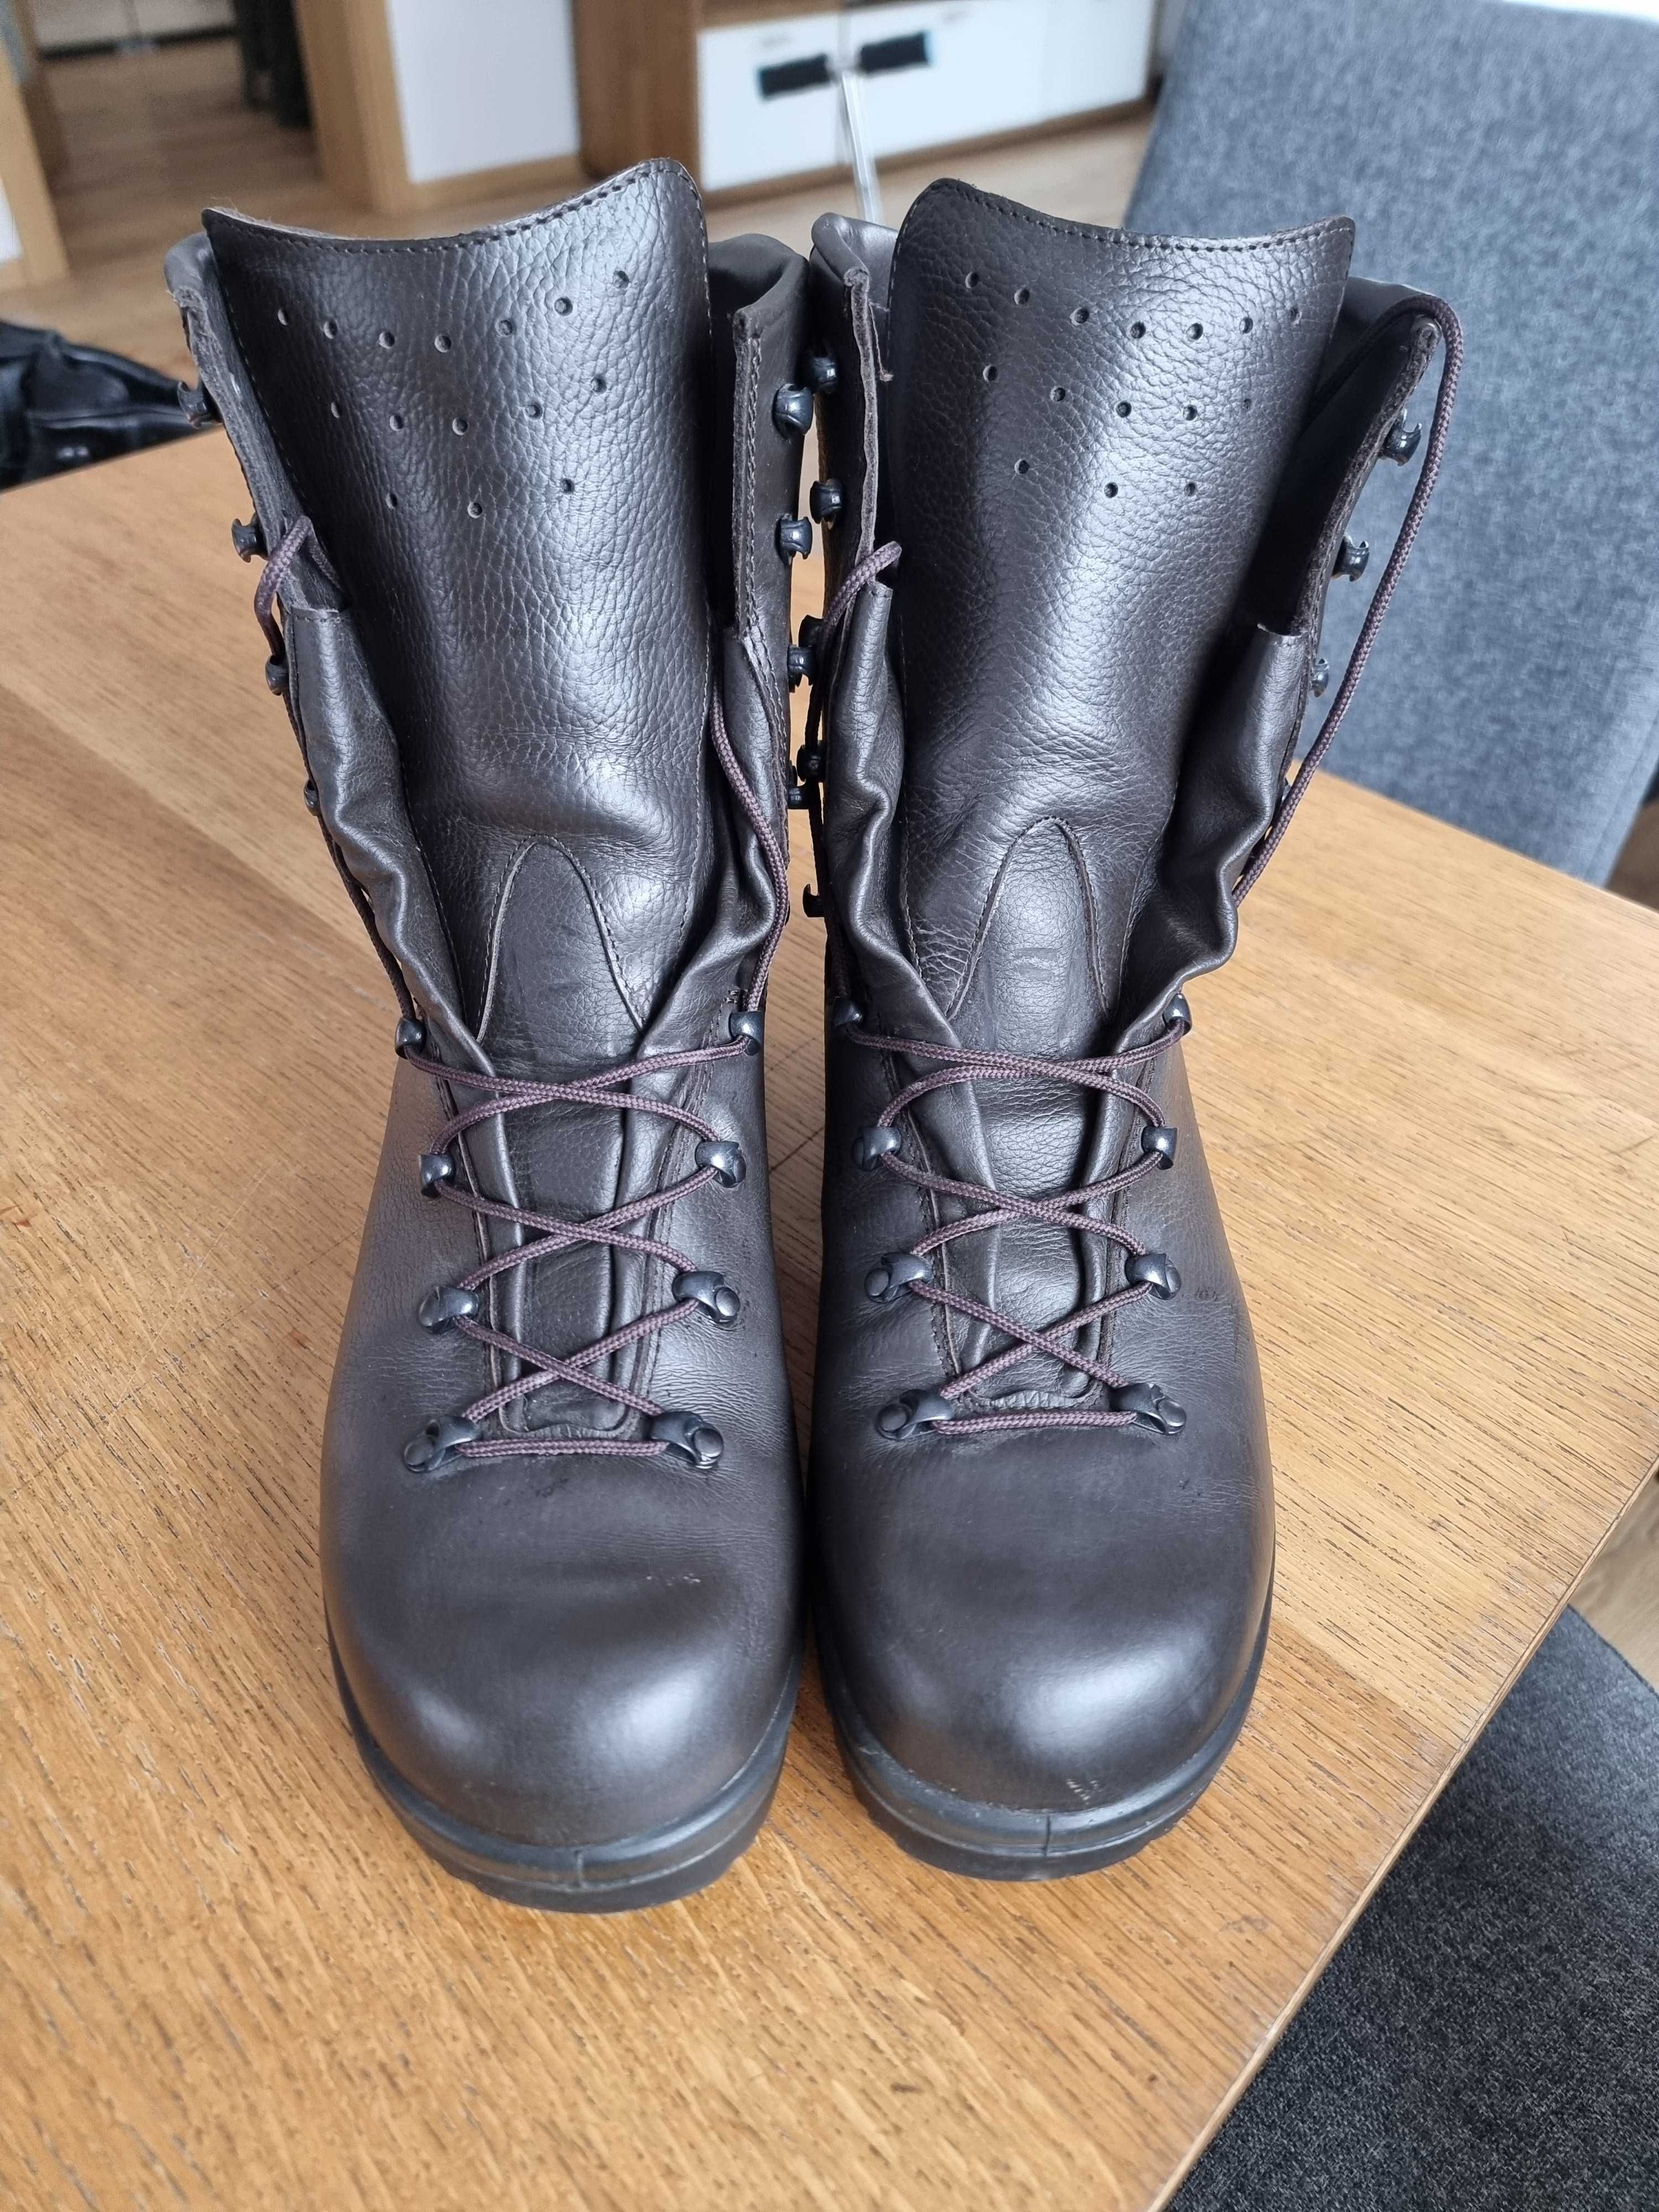 Buty wojskowe zimowe wz 933A/MON roz 30,5 cm, 47